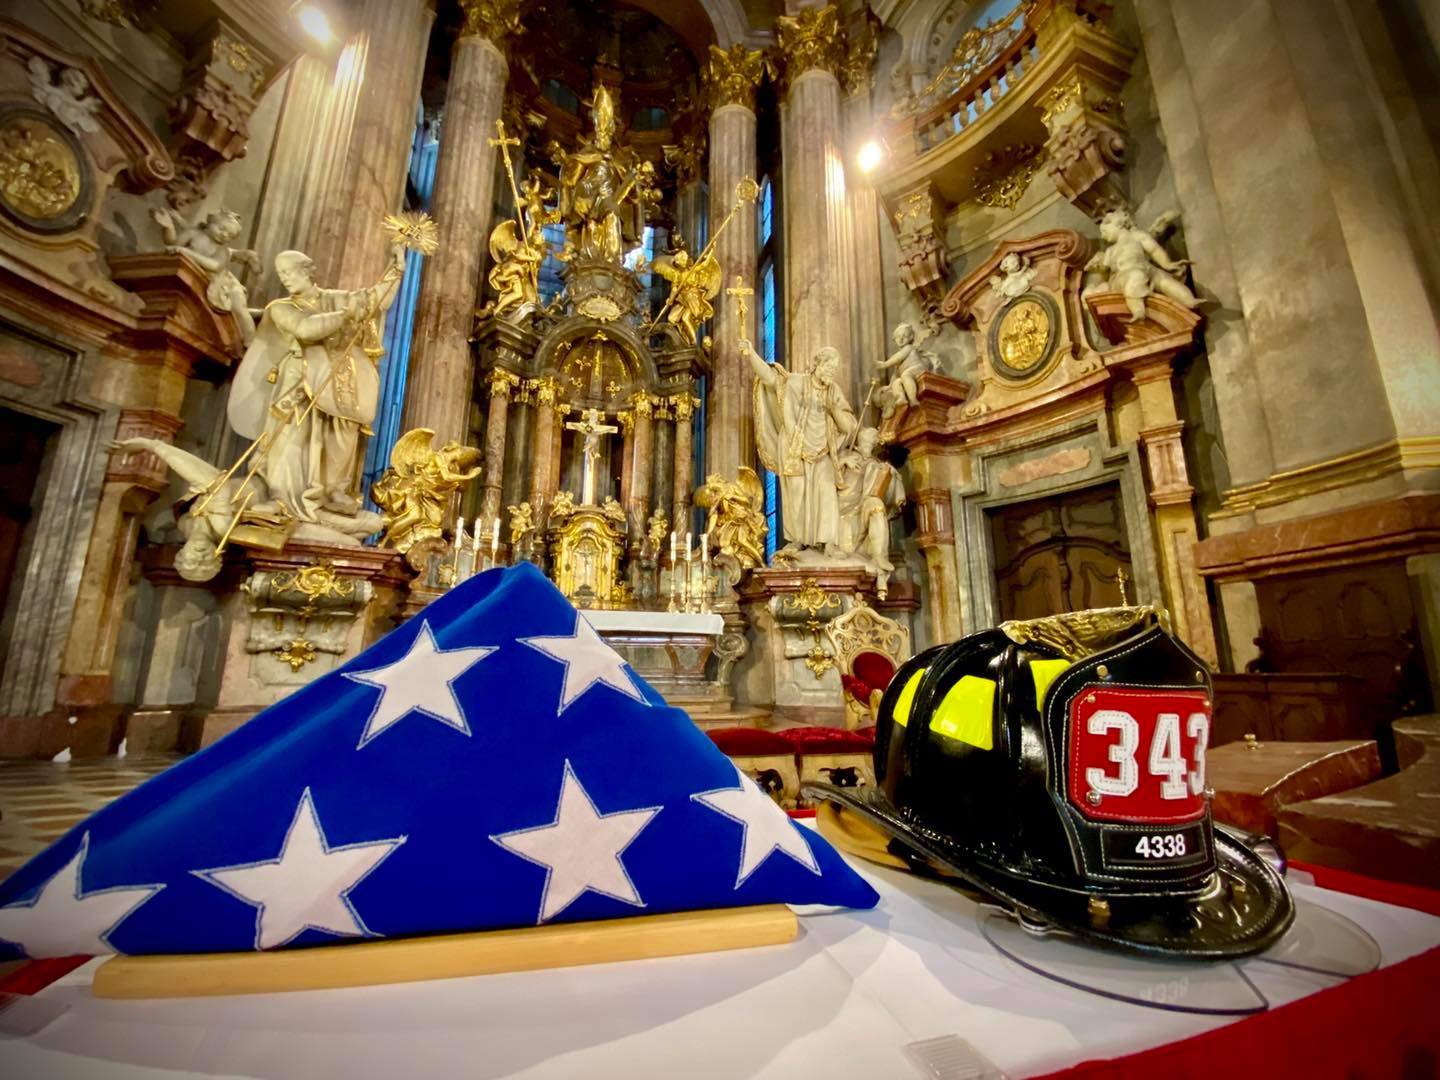 Pietní akt v chrámu sv. Mikuláše, pohled na přilbu amerického hasiče a americkou vlajku před oltářem.jpg